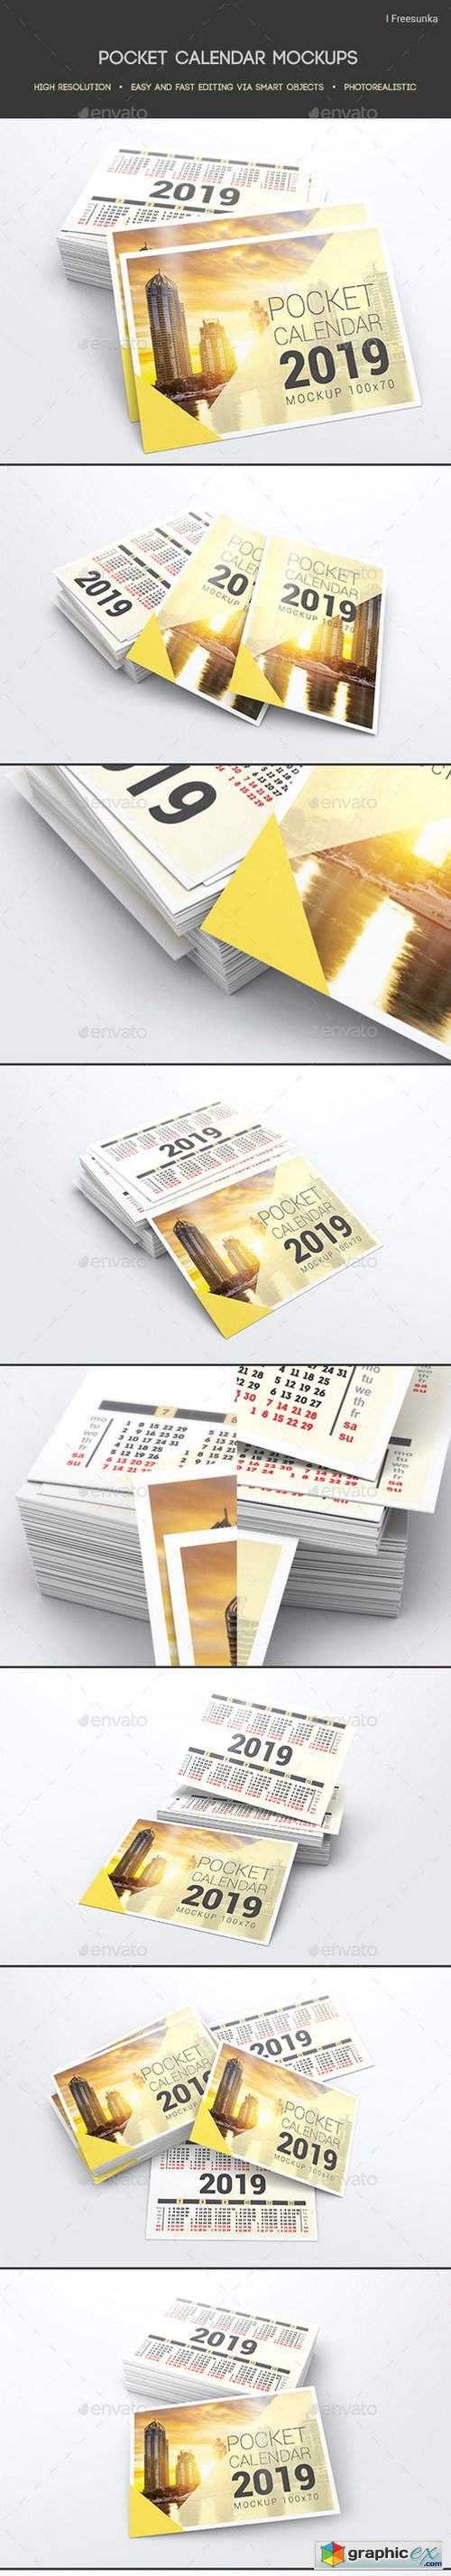 Pocket Calendar Mockups